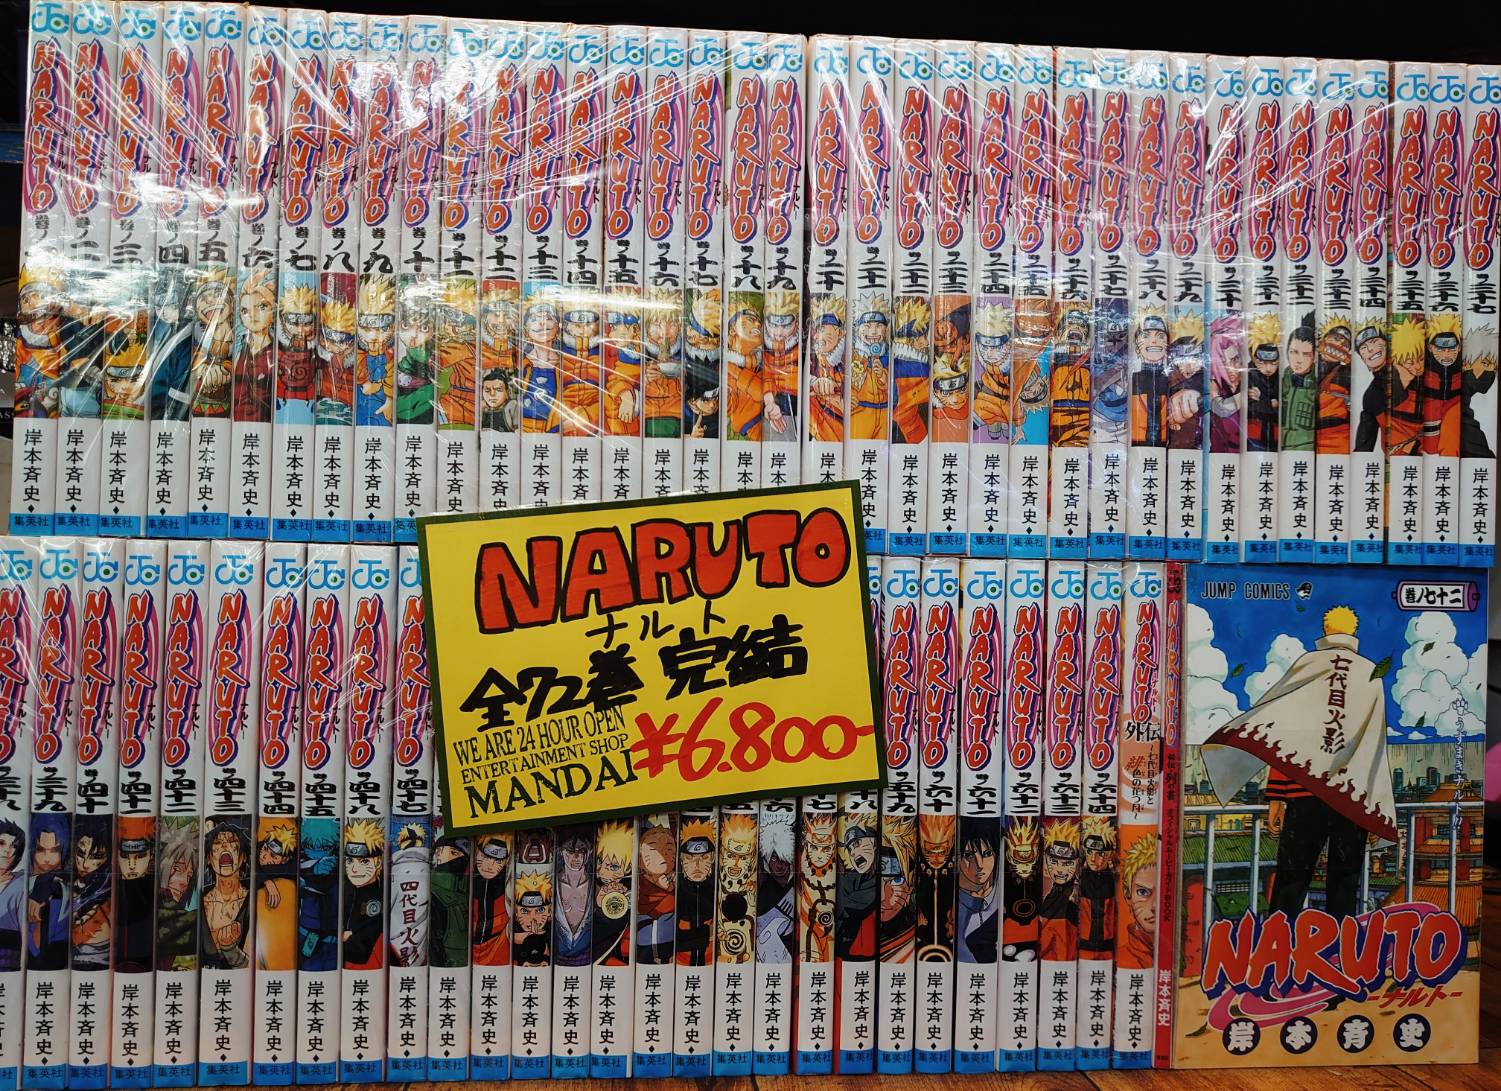 コミック 9 入荷 在庫情報です 銀魂 Bleach Naruto など 70巻超えセット をお持ちいただきました 万代書店 川越店